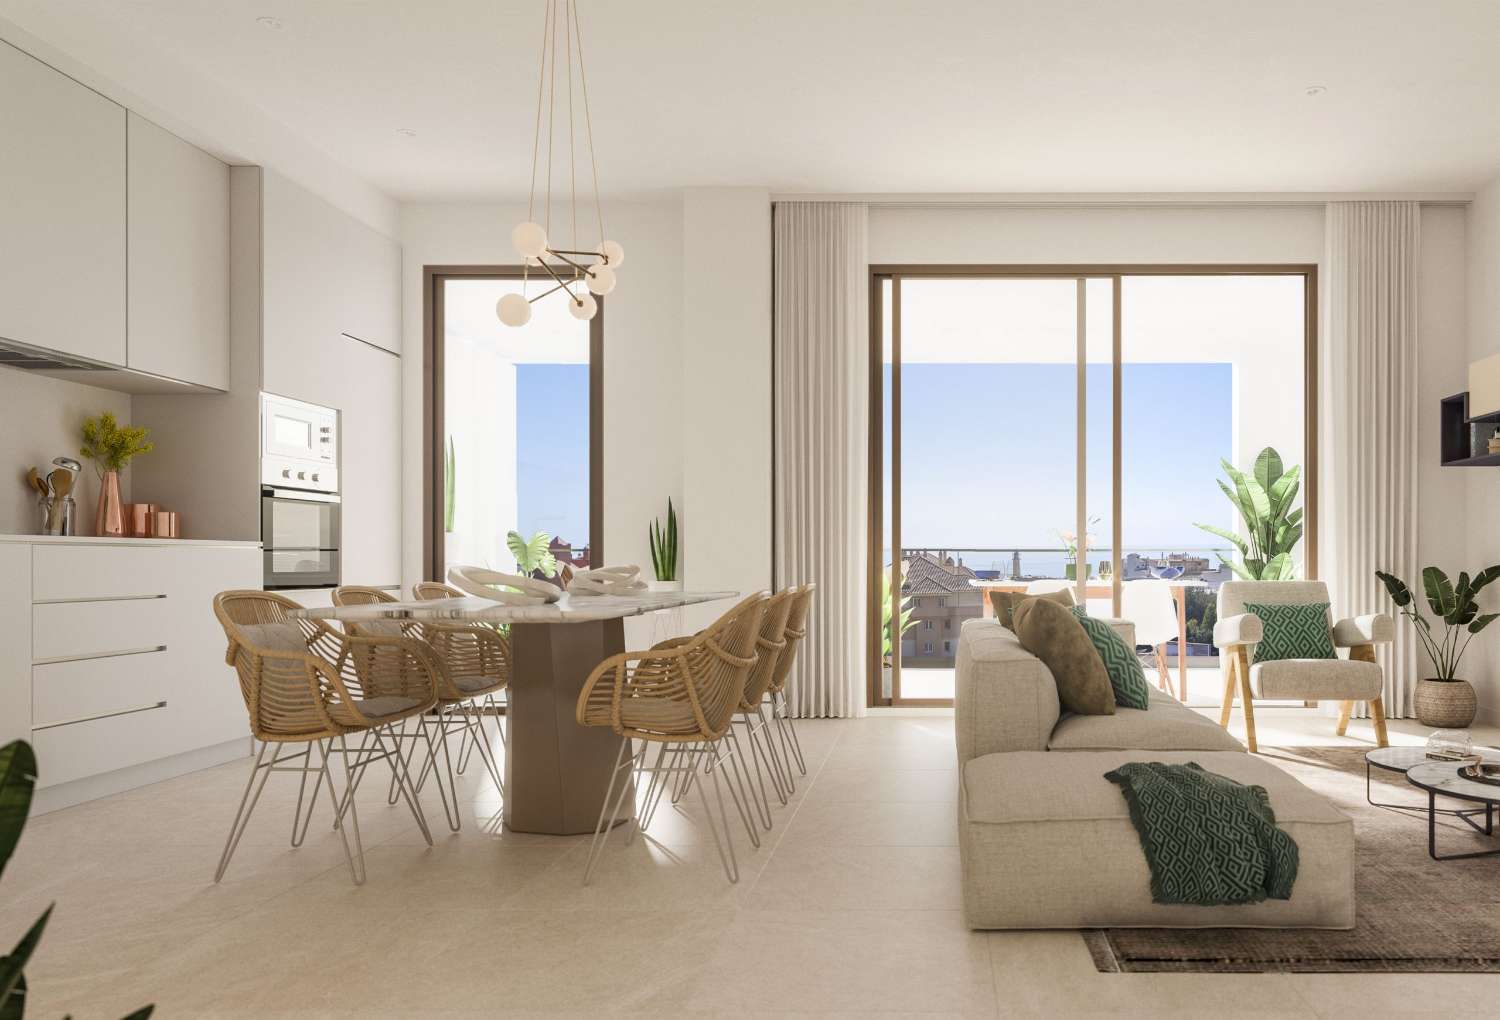 2 ou 3 chambres, 2 salles de bains et une terrasse avec vue sur la mer – à partir de 218.000 €